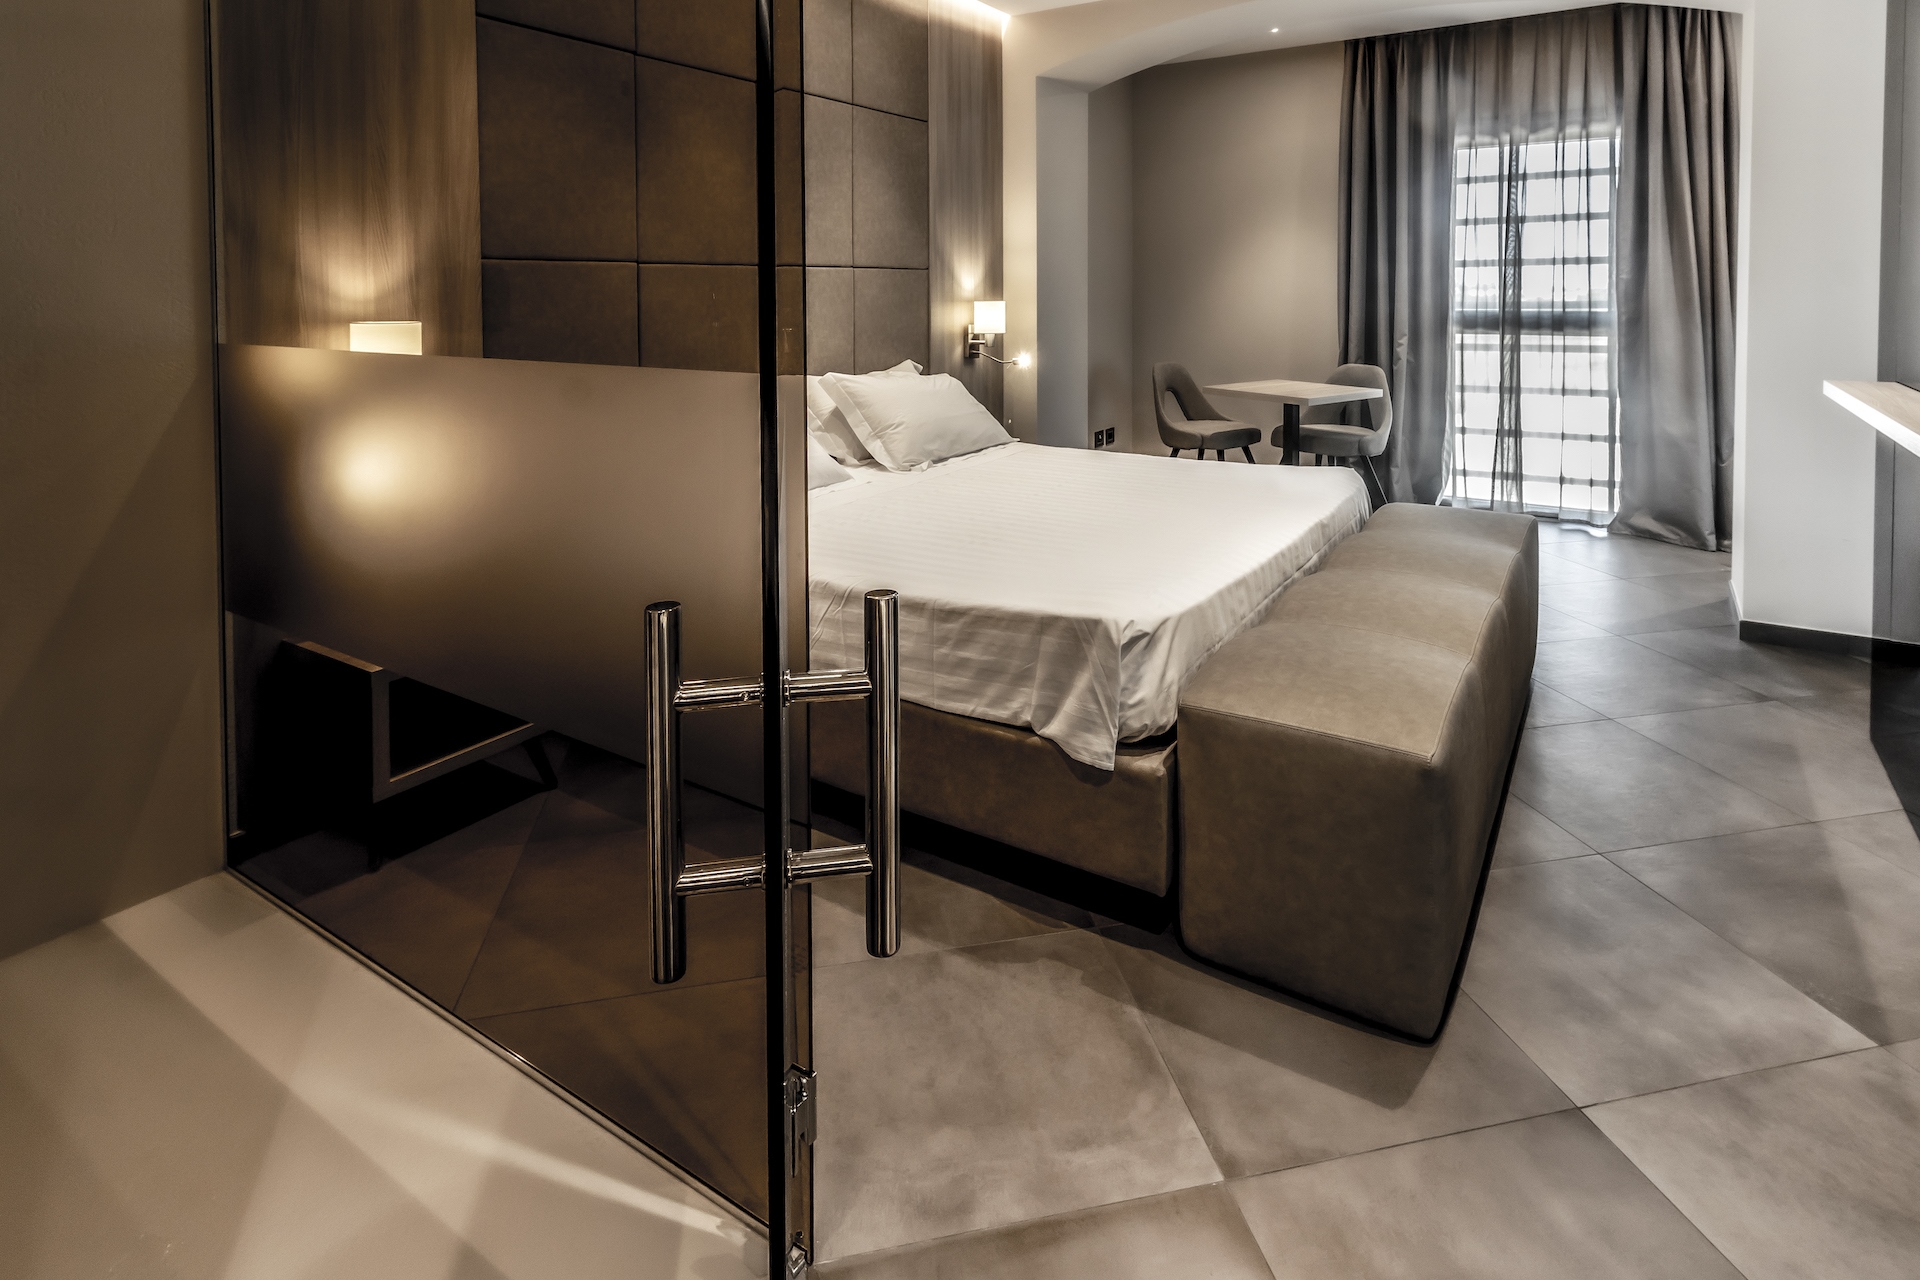 bagno vetro arredo di lusso contract per Hotel Salina di Taranto realizzato dal Gruppo Rodi